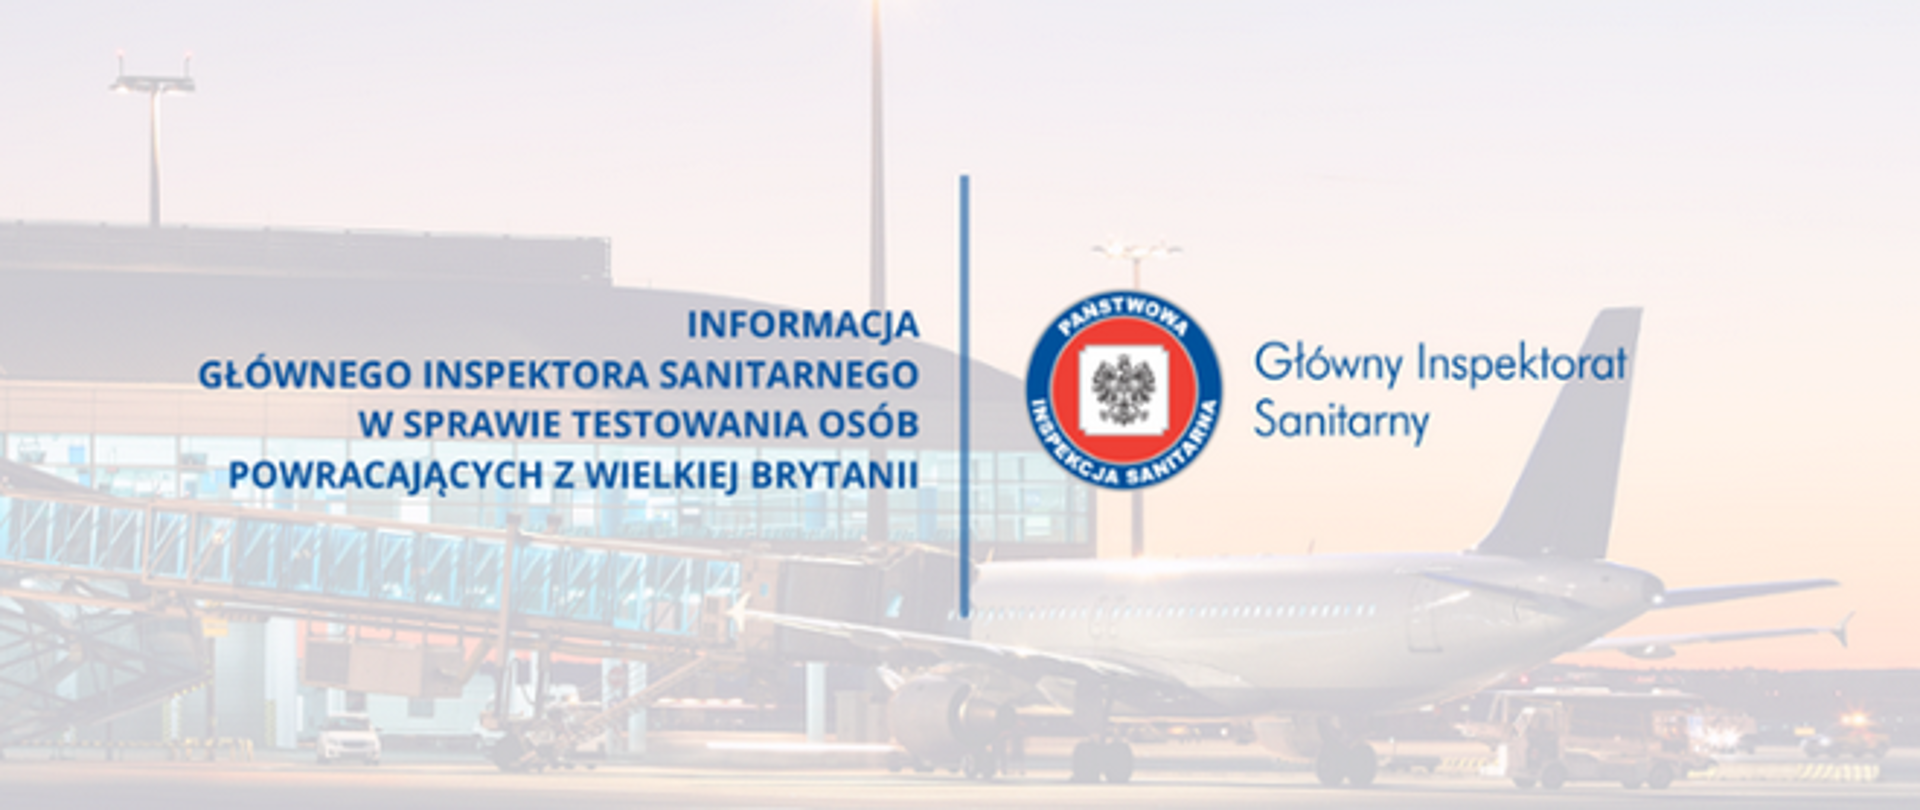 Z frontu napis "Informacja głównego inspektora sanitarnego w sprawie testowania osób powracających z Wielkiej Brytanii" w tle widać samolot na lotnisku